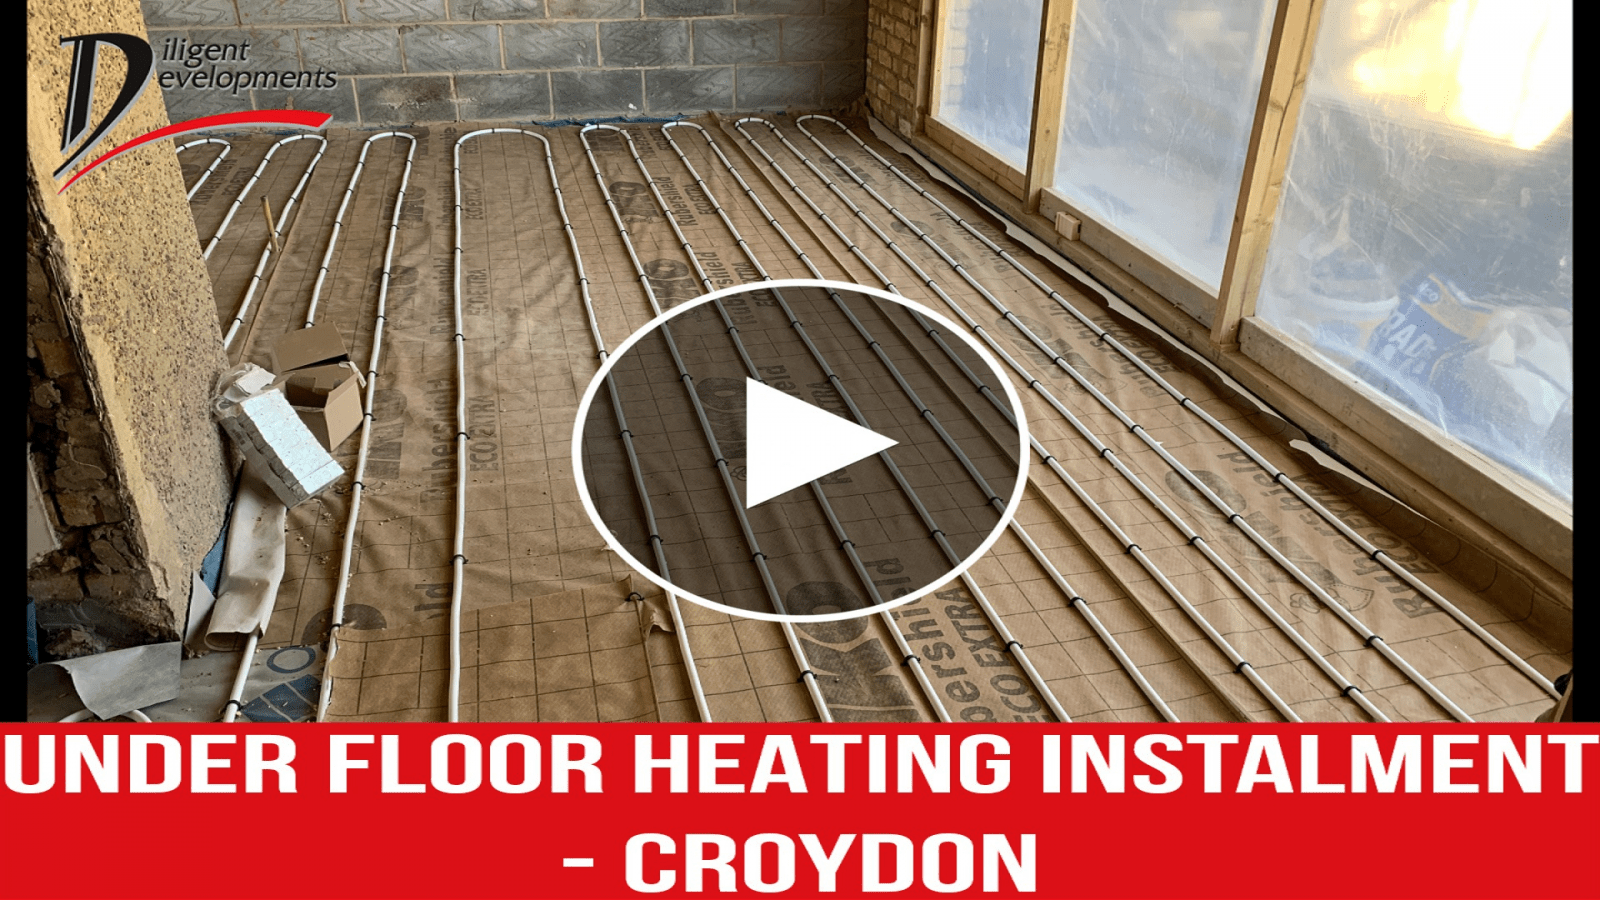  Underfloor Heating Installation - Croydon Thornton Heath